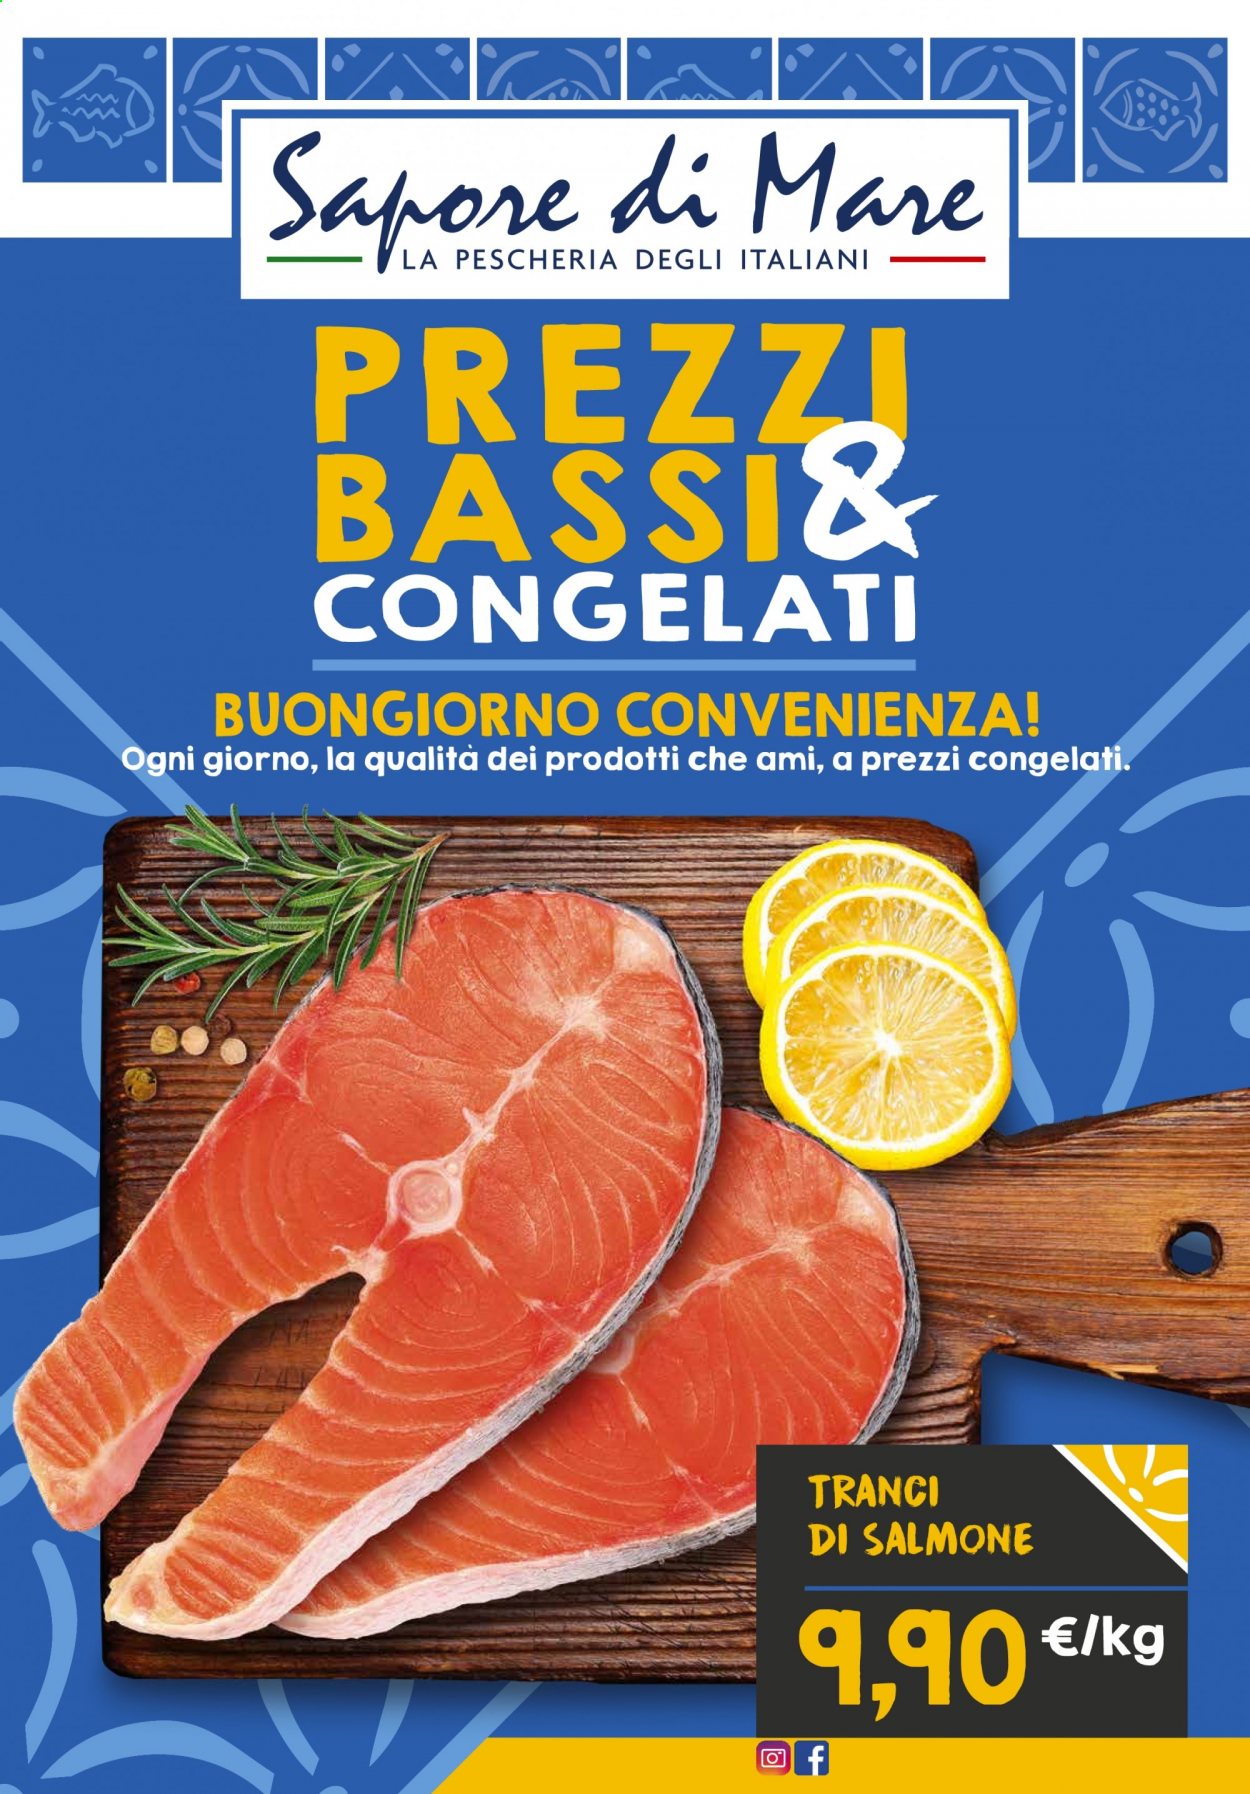 thumbnail - Volantino Sapore di Mare - Prodotti in offerta - salmone. Pagina 1.